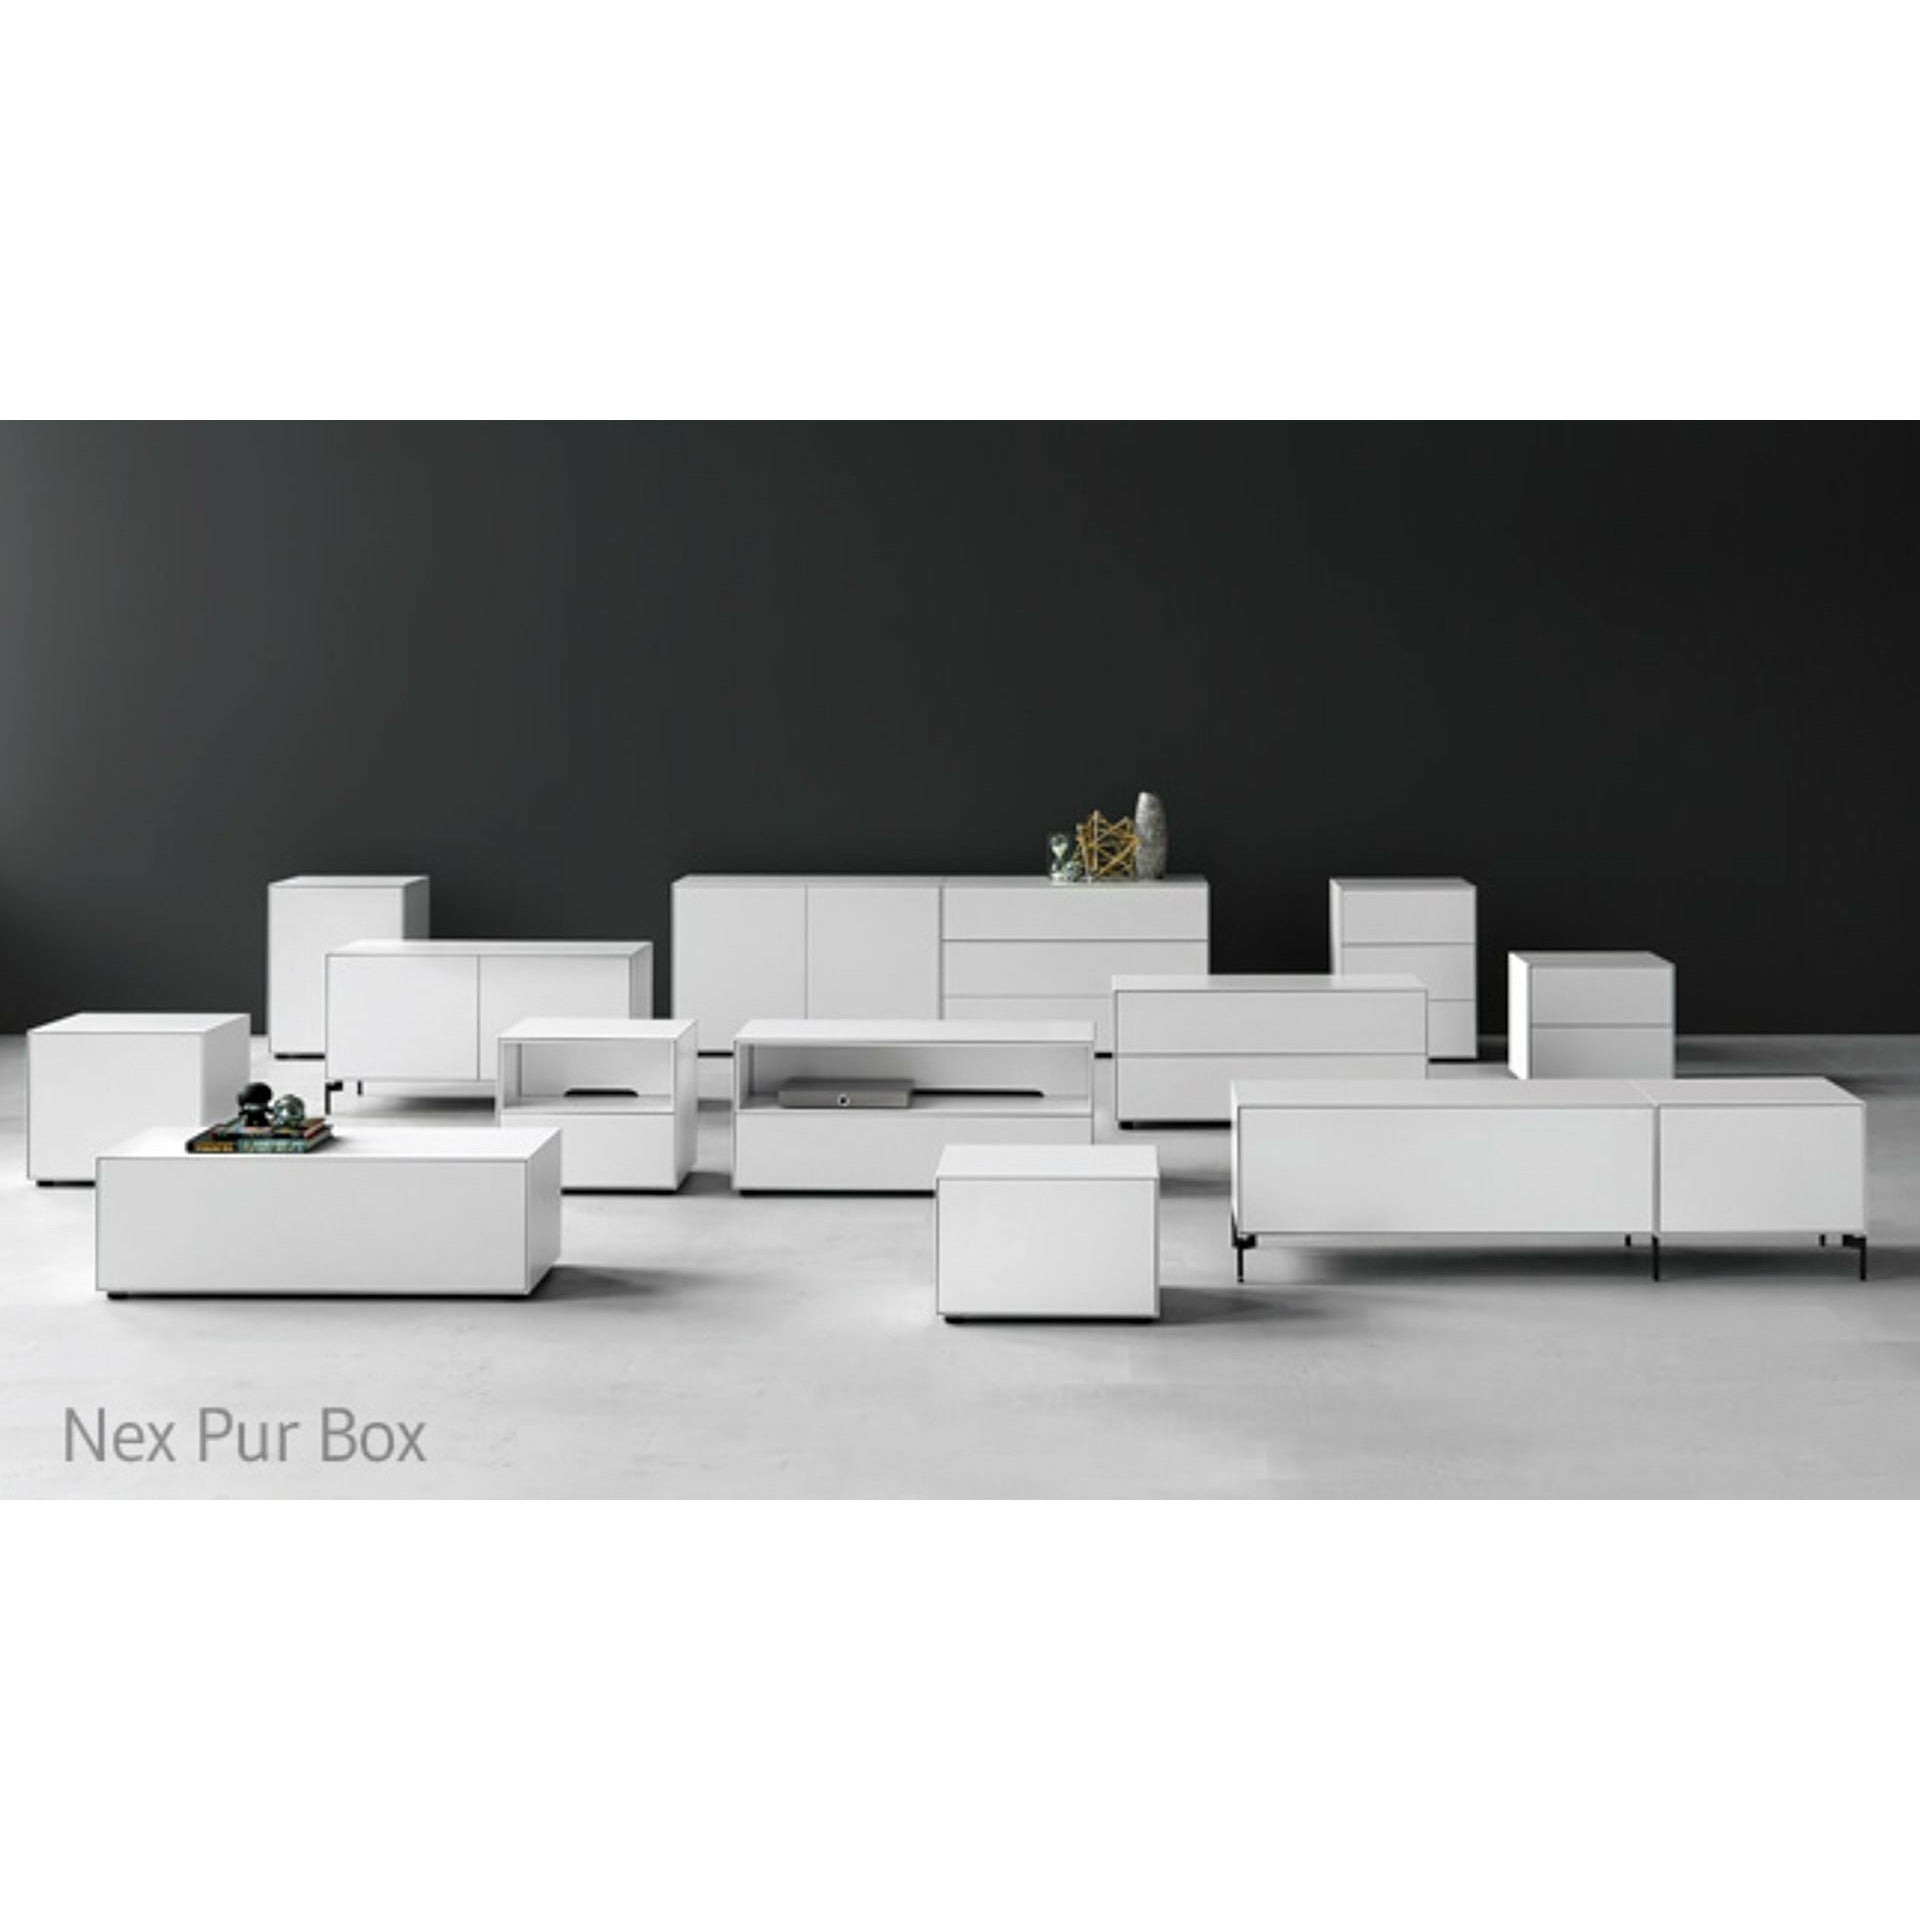 Piure NEX PUR BOX HX W 50x120 cm, 2 tiroirs